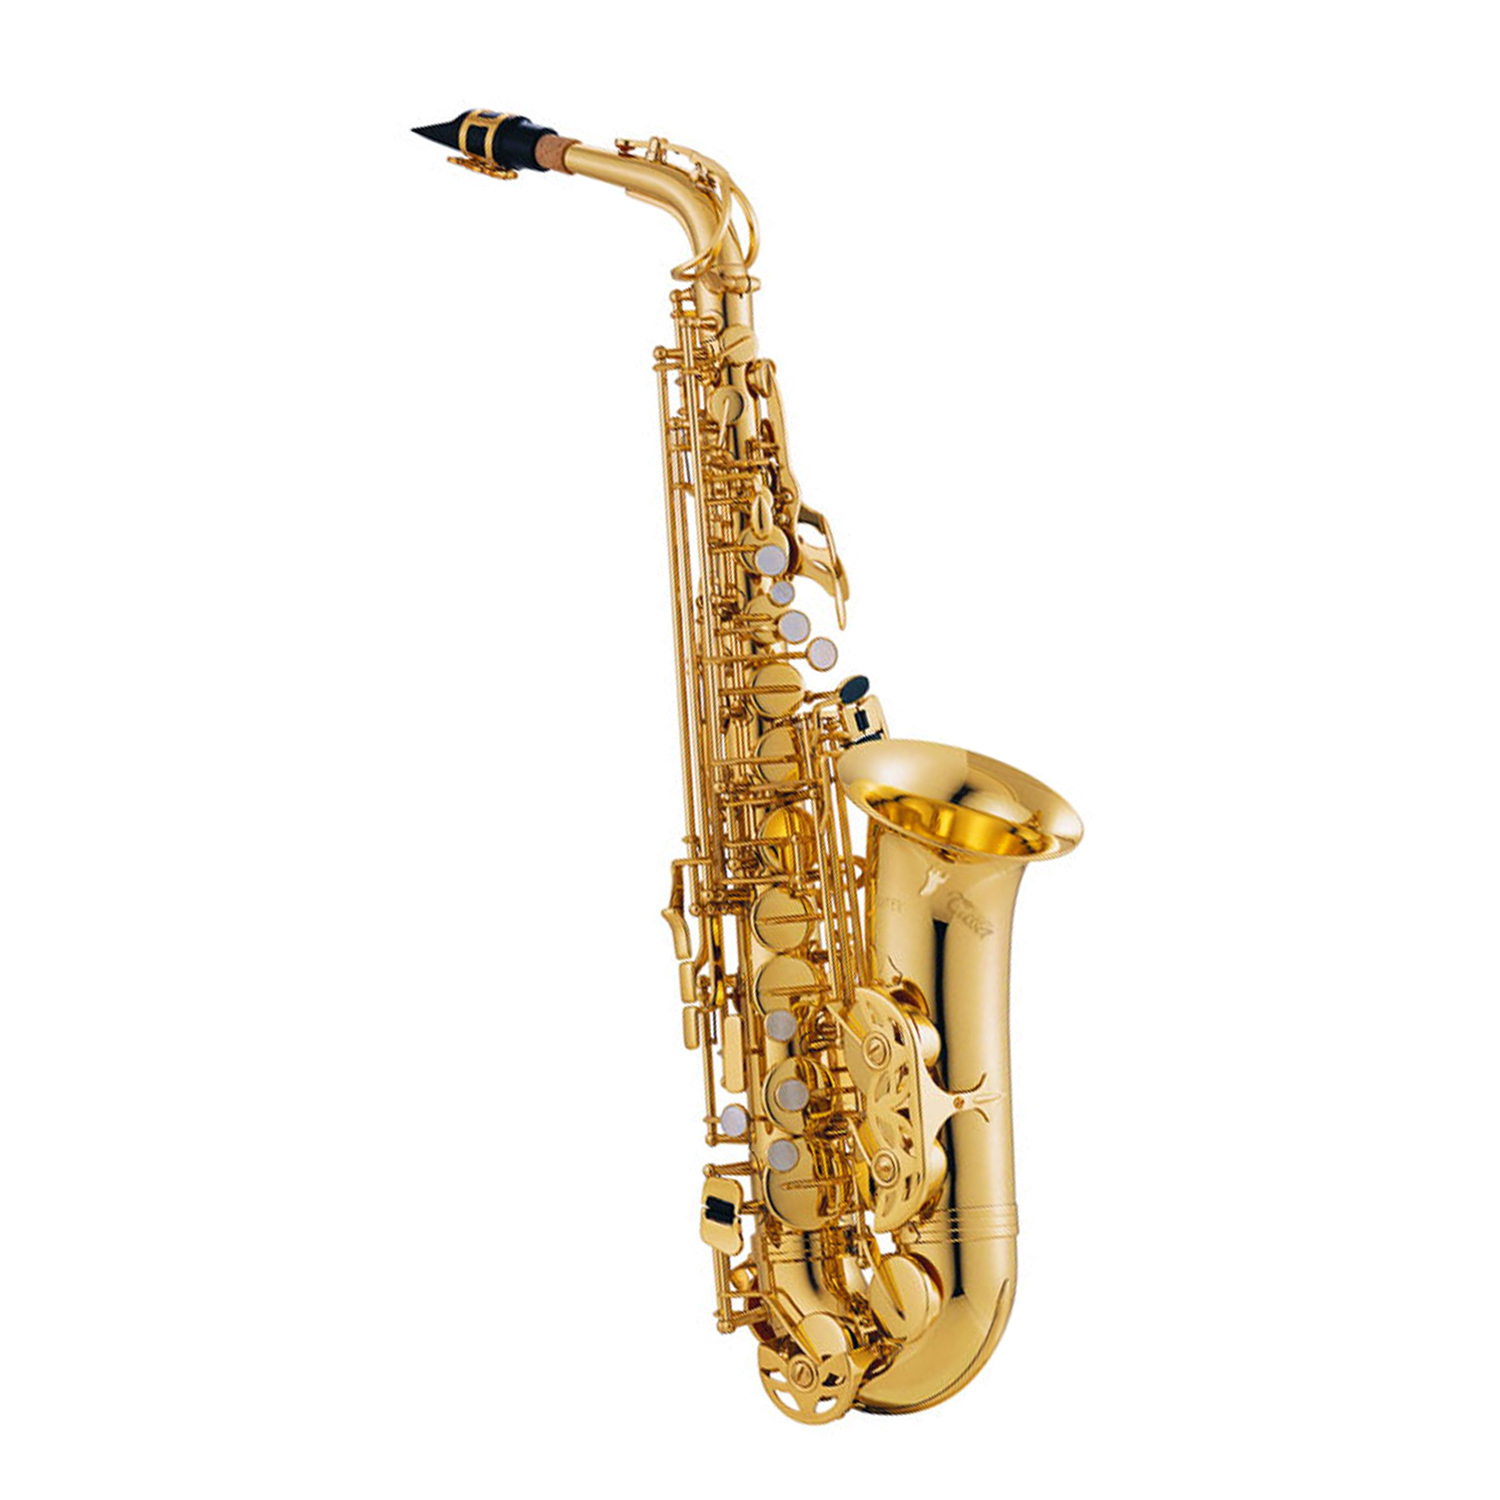 Клапан саксофона. Саксофон. Саксофон инструмент. Маленький саксофон название. Музыкальный инструмент саксофон на подставке.